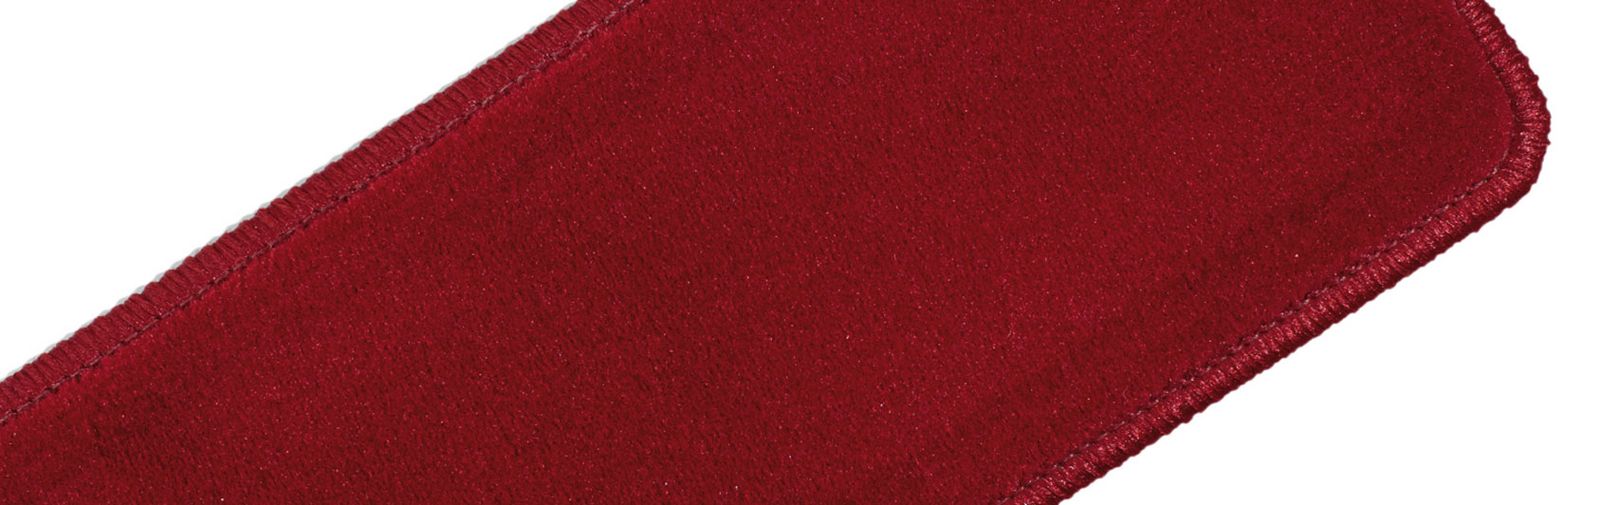 exemple agenouilloir velours qualité uni couleur code 611 couleur rouge clair